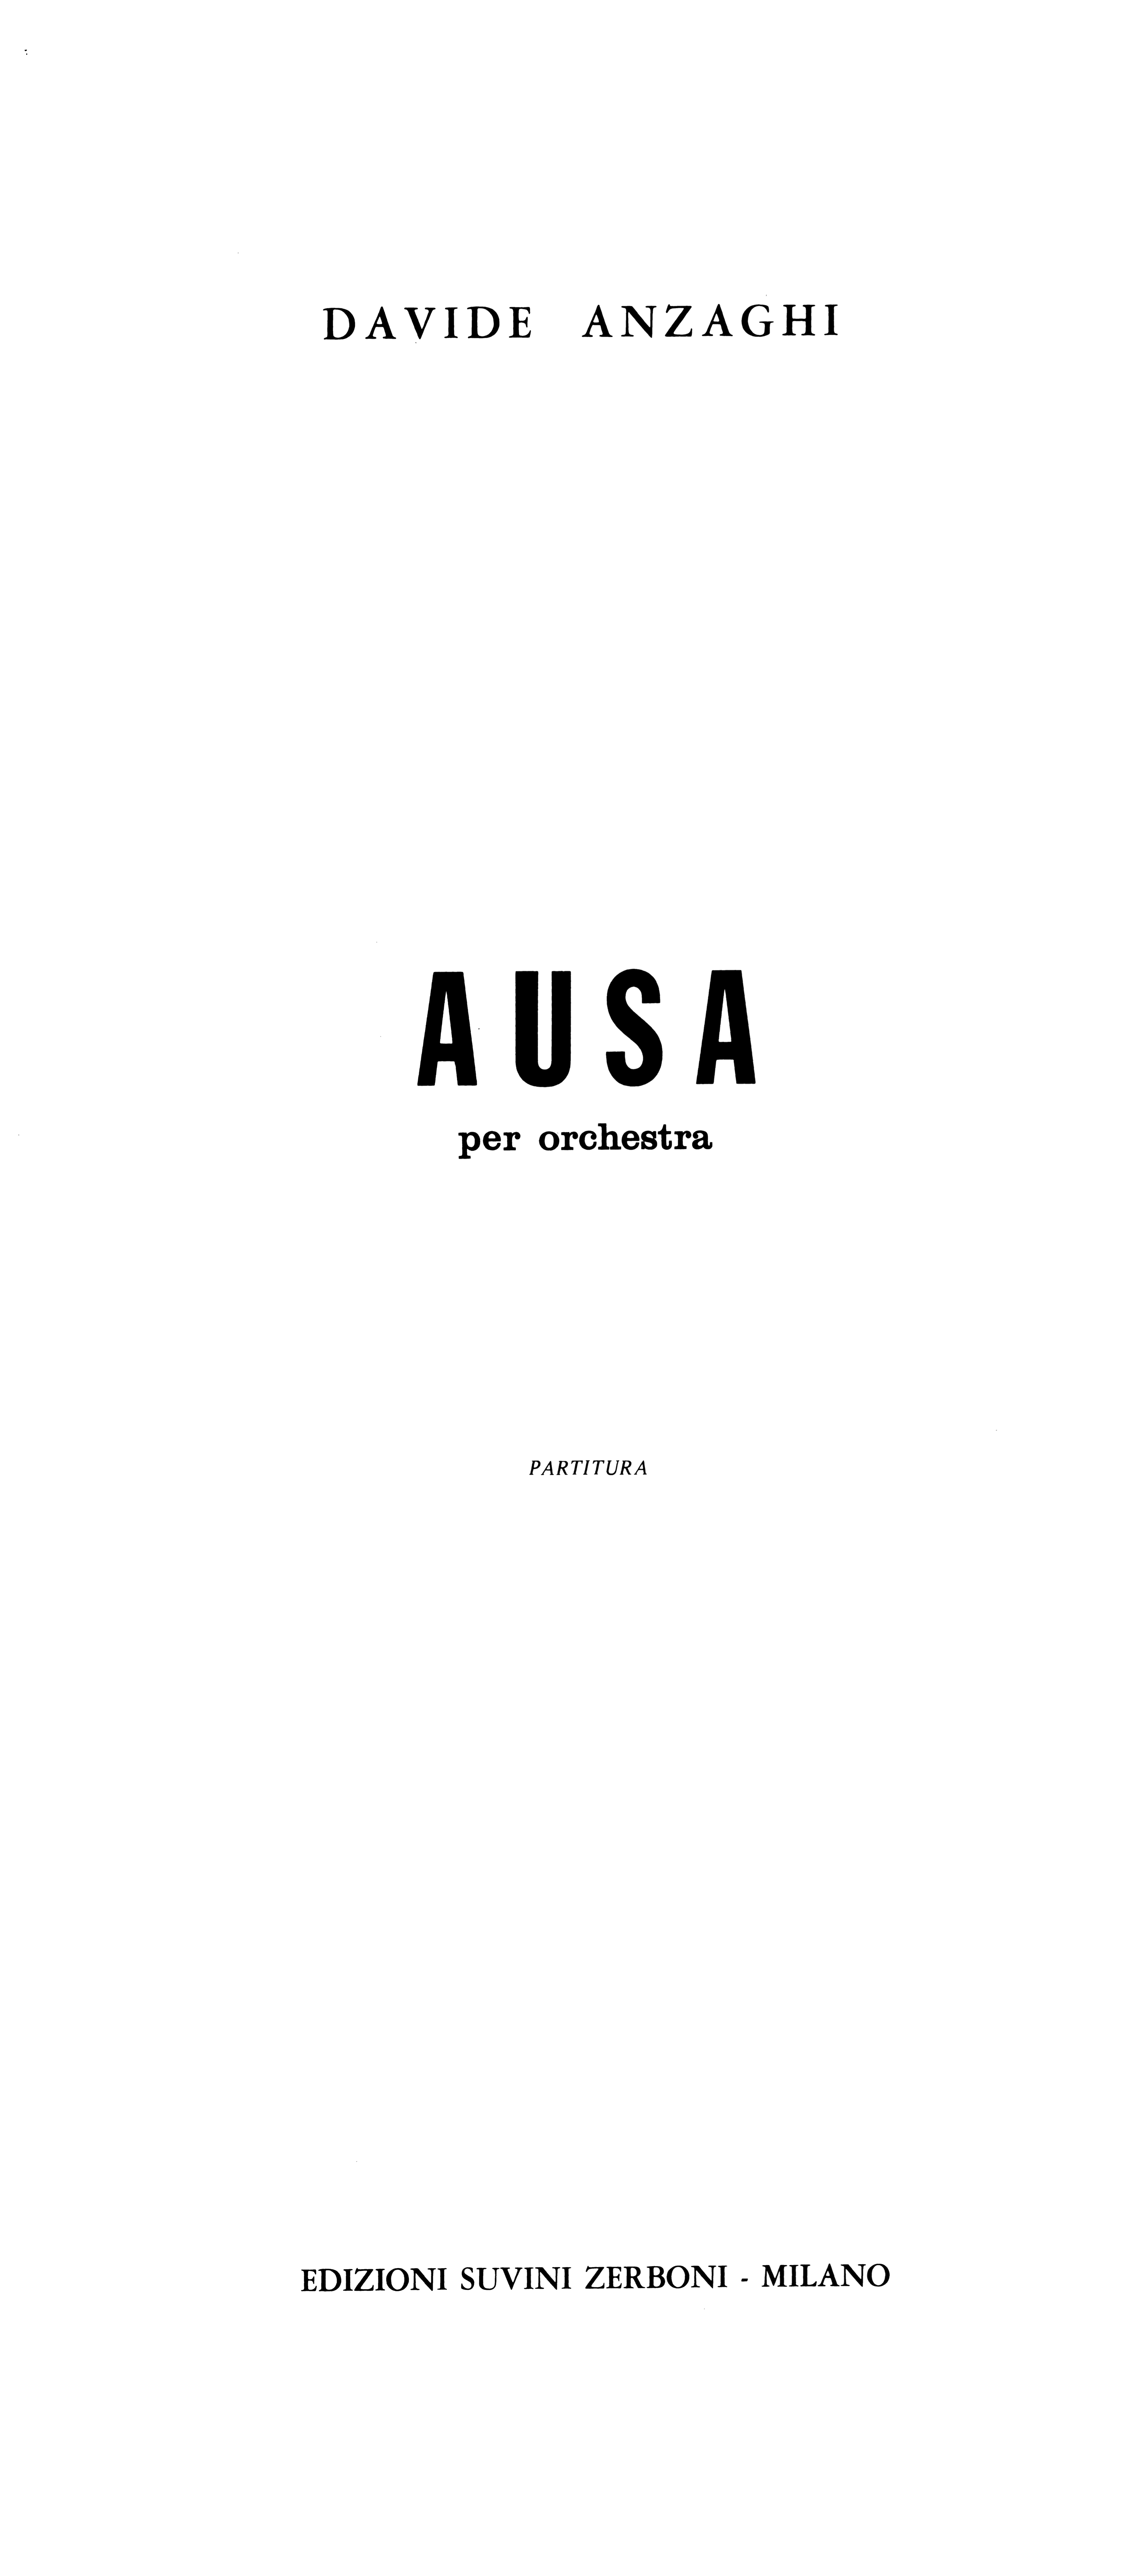 Ausa_Anzaghi 1